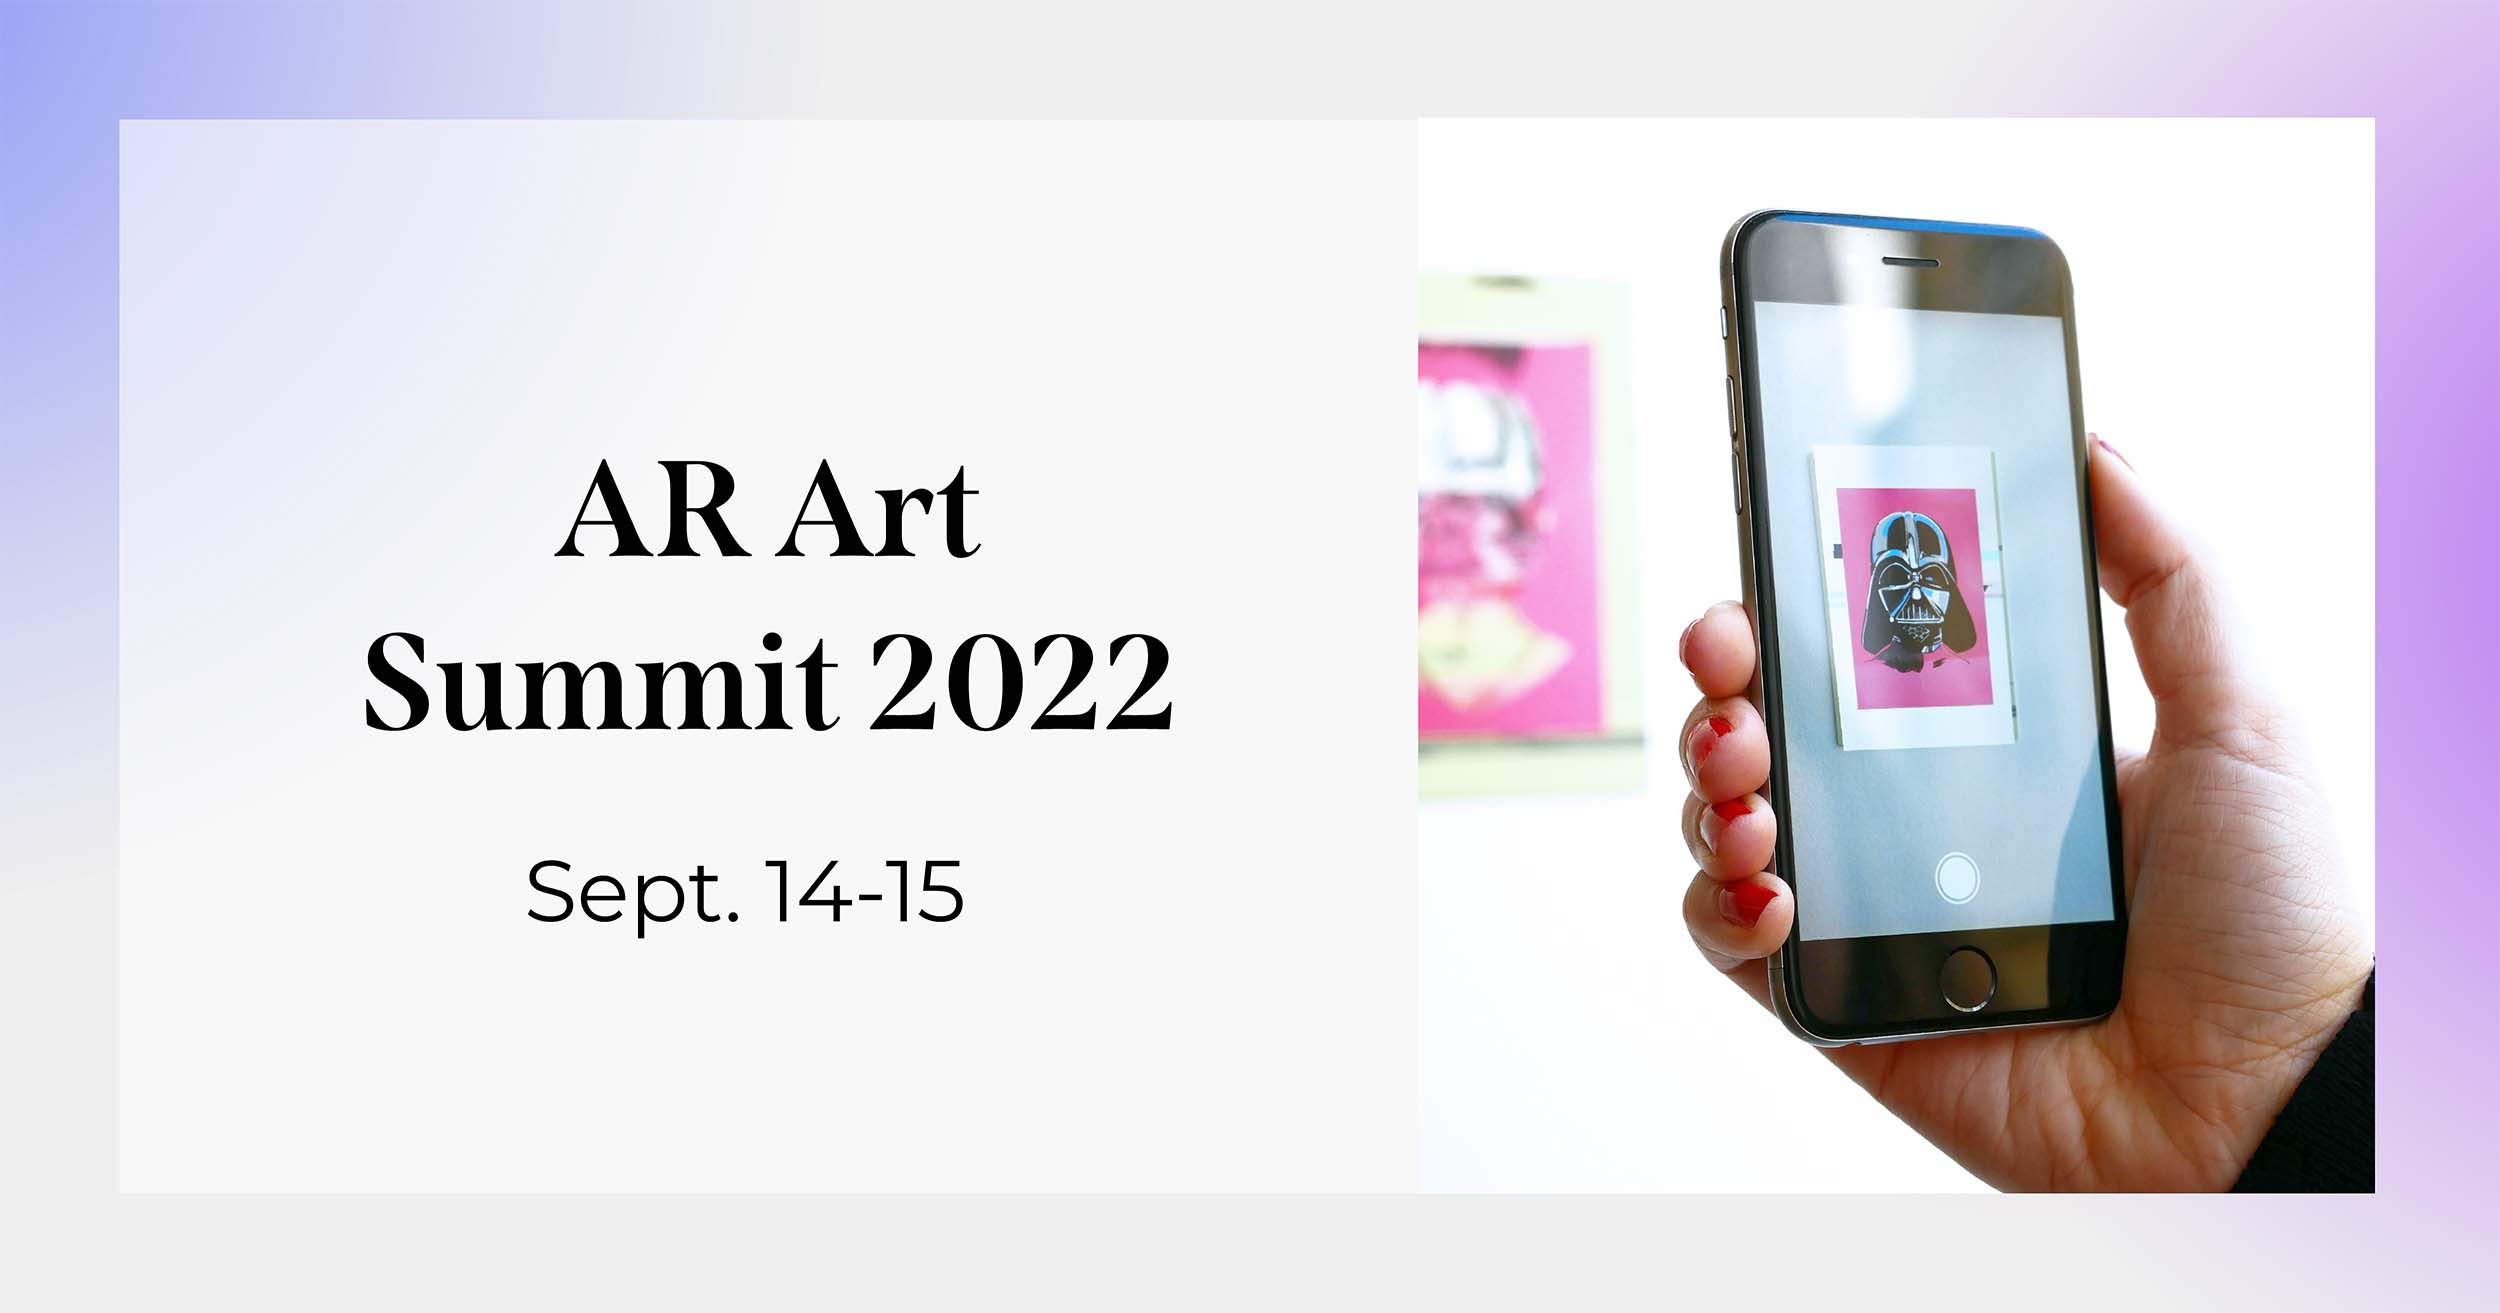 AR Art Summit